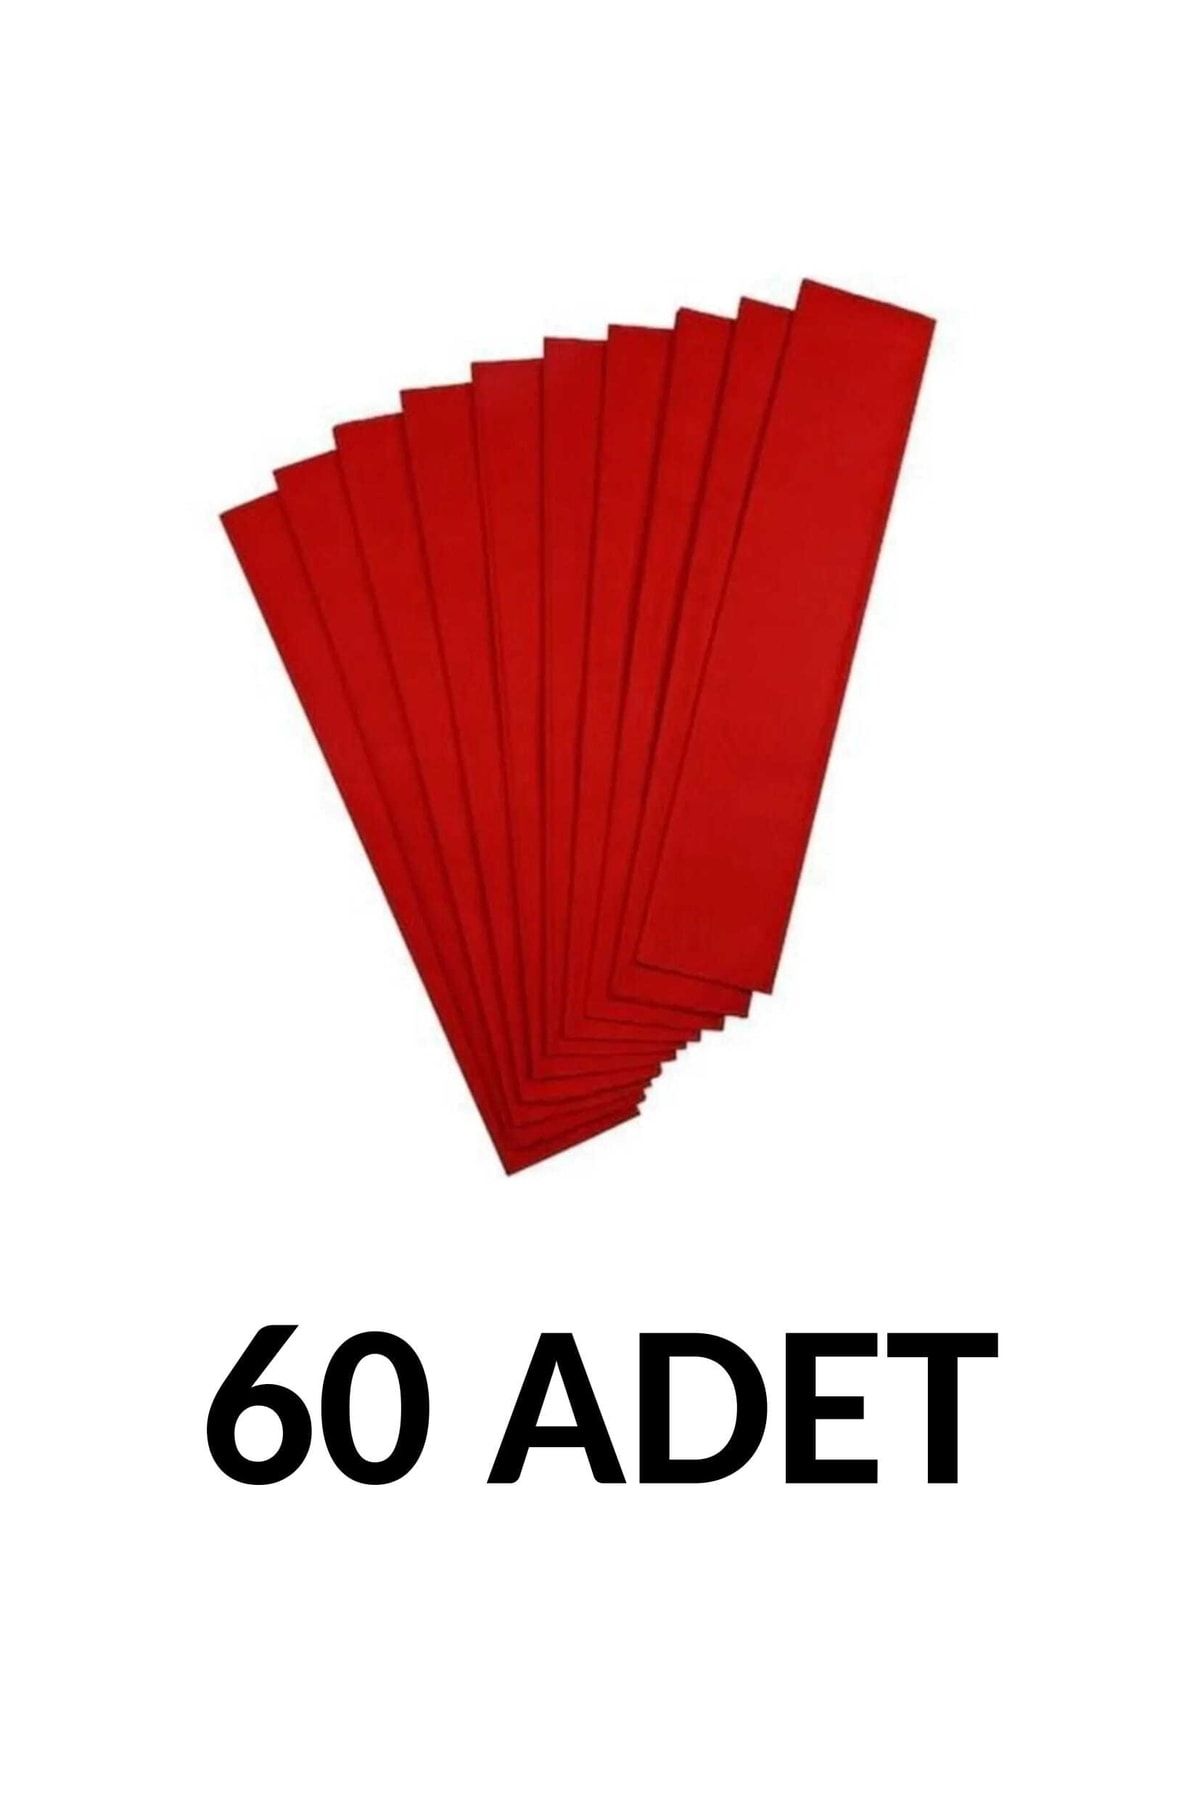 Ticon 60 Adet 50*200 Cm Kırmızı Renk Krapon Kağıdı